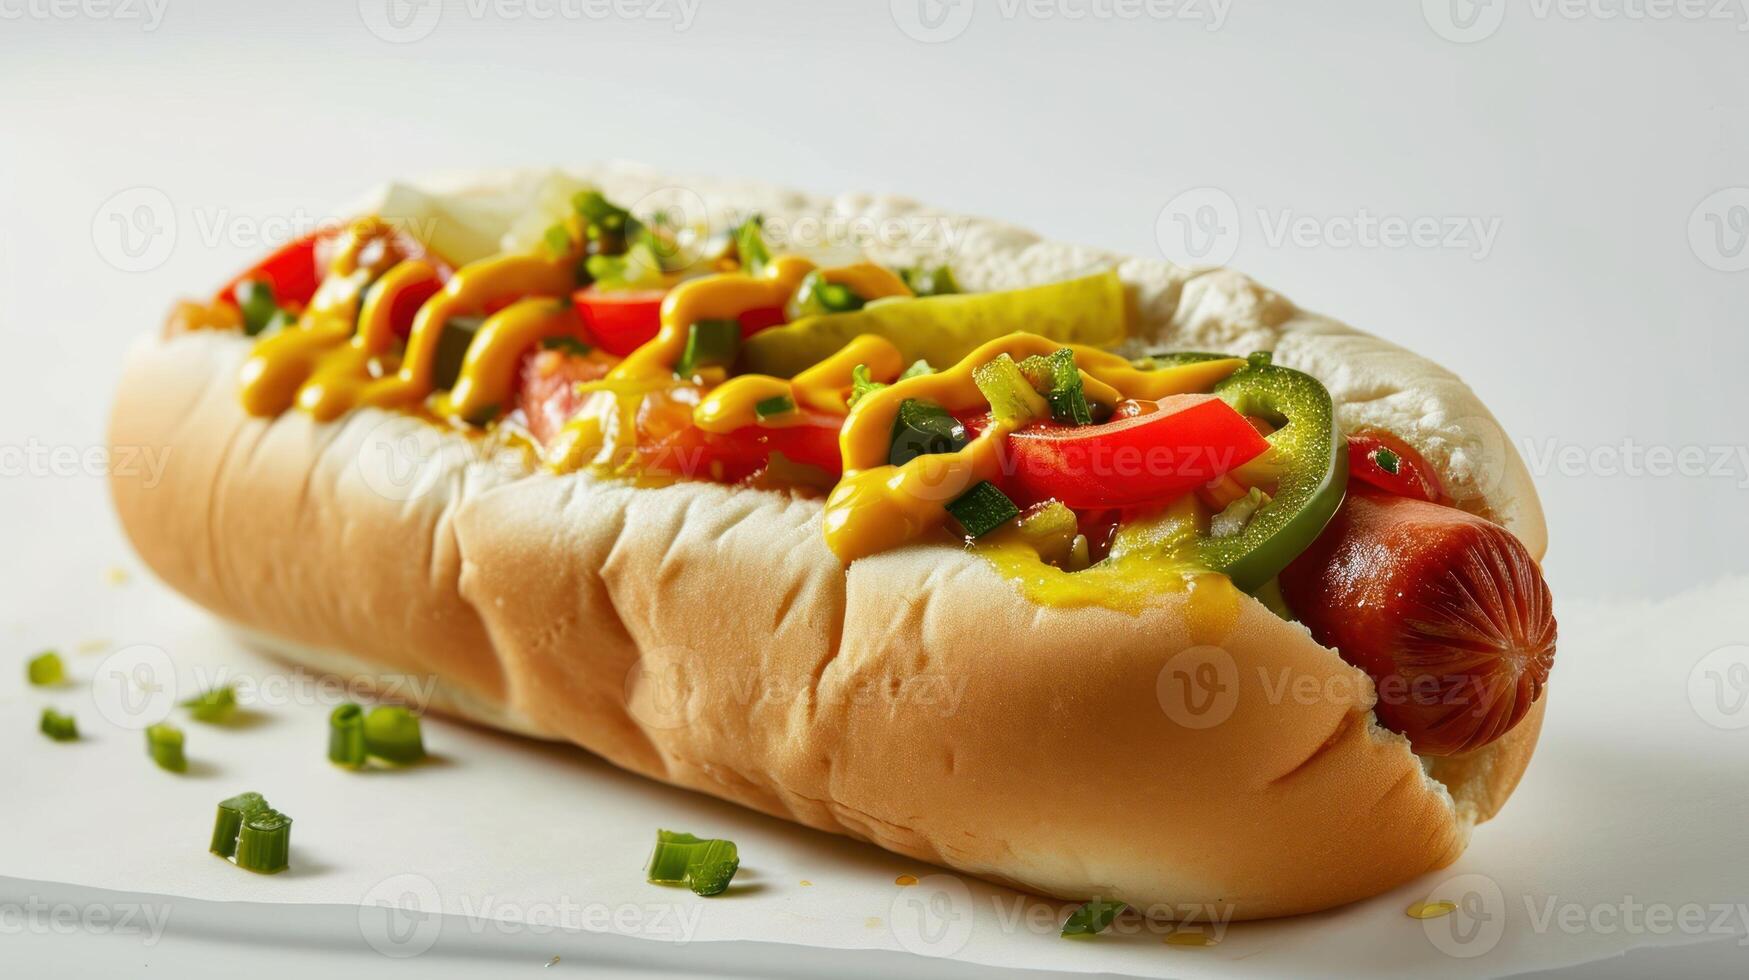 Chicago style hot dog against white background photo